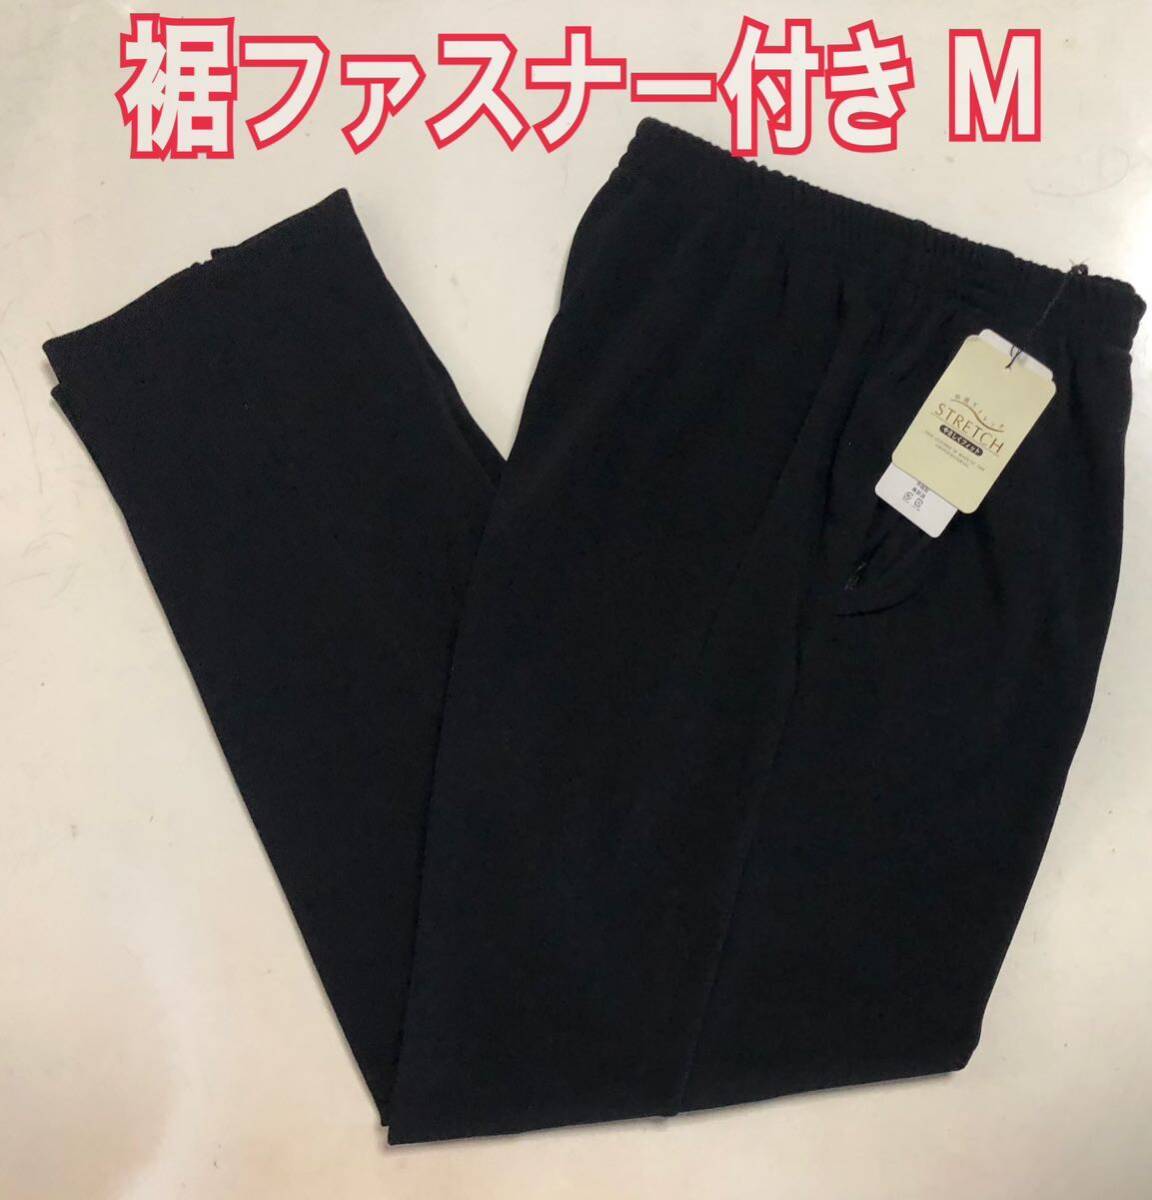 M женский брюки кромка застежка-молния имеется стрейч талия резина растягивать компонент входить длина ног 65cm чёрный цвет 